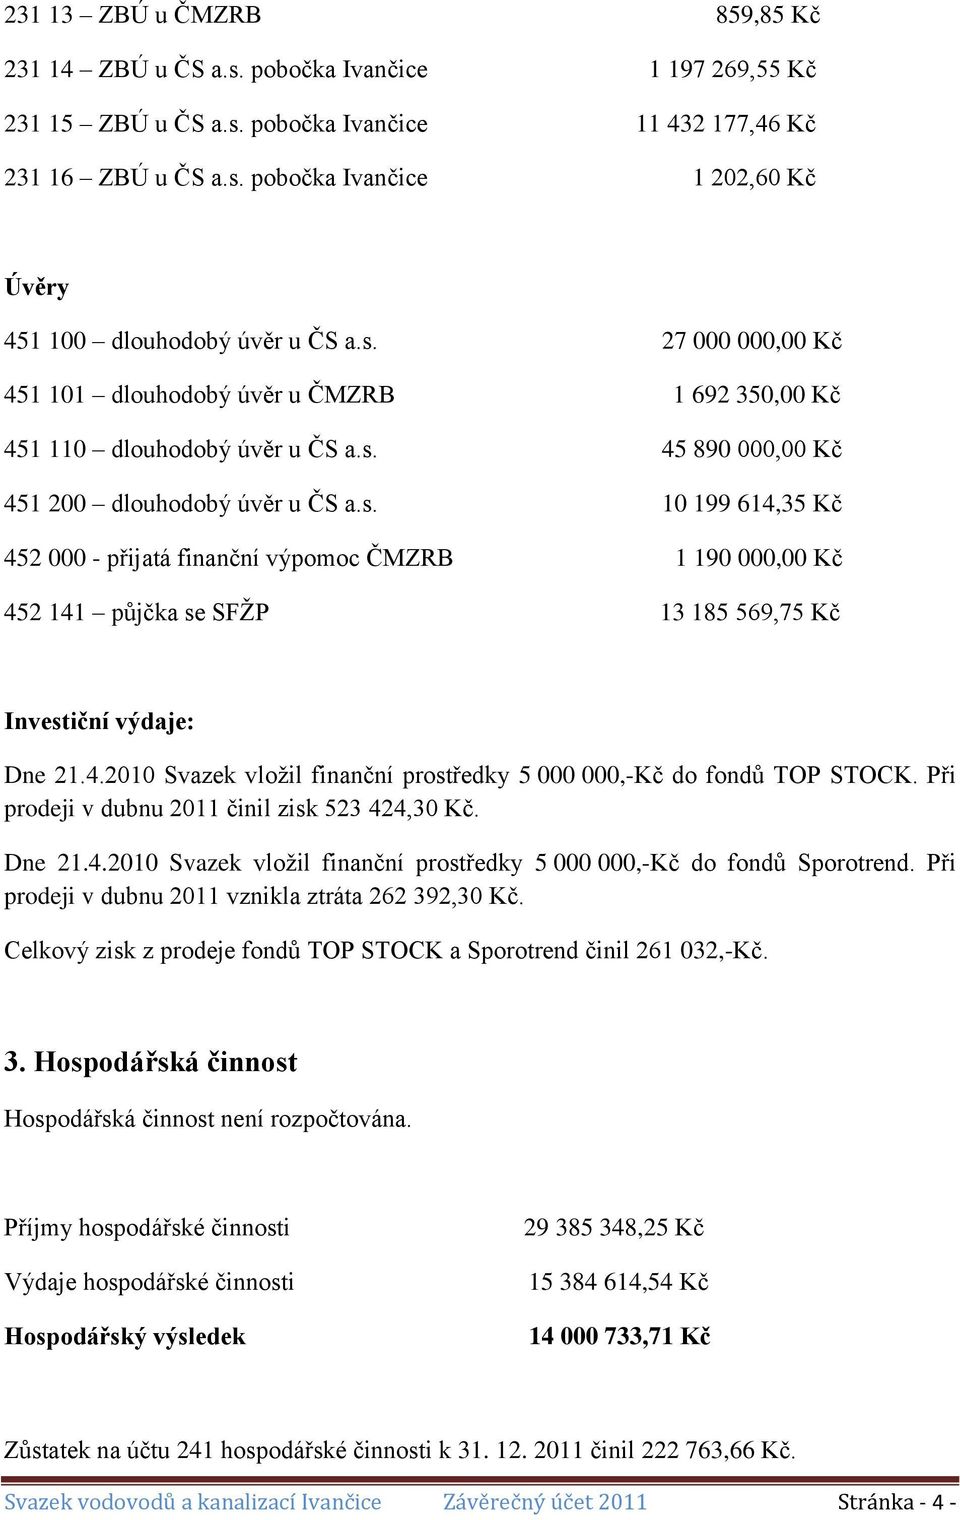 4.2010 Svazek vložil finanční prostředky 5 000 000,-Kč do fondů TOP STOCK. Při prodeji v dubnu 2011 činil zisk 523 424,30 Kč. Dne 21.4.2010 Svazek vložil finanční prostředky 5 000 000,-Kč do fondů Sporotrend.